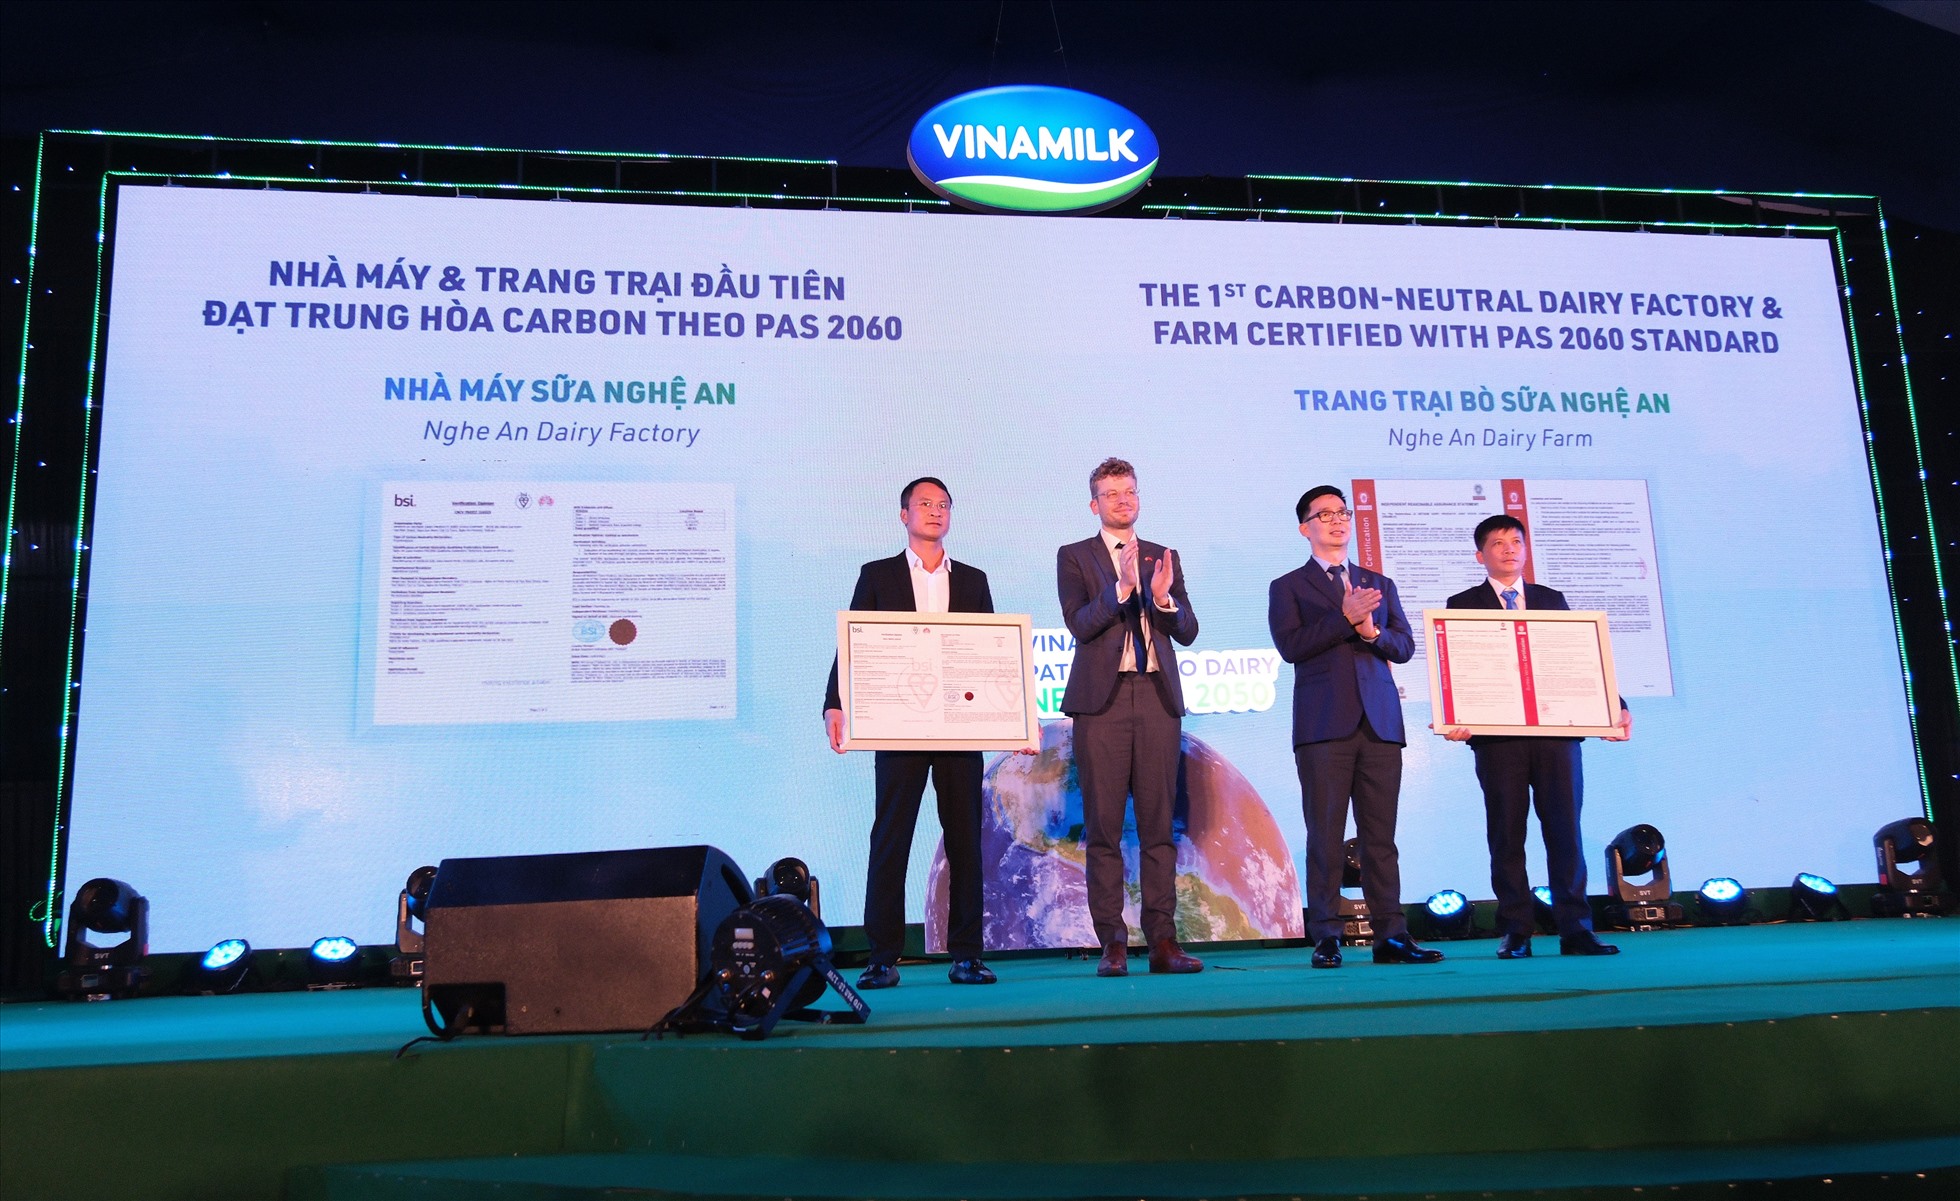 : Trang trại bò sữa Vinamilk Nghệ An là trang trại đầu tiên nhận chứng nhận về trung hòa Carbon (PAS2060:2014). Ảnh: Vinamilk